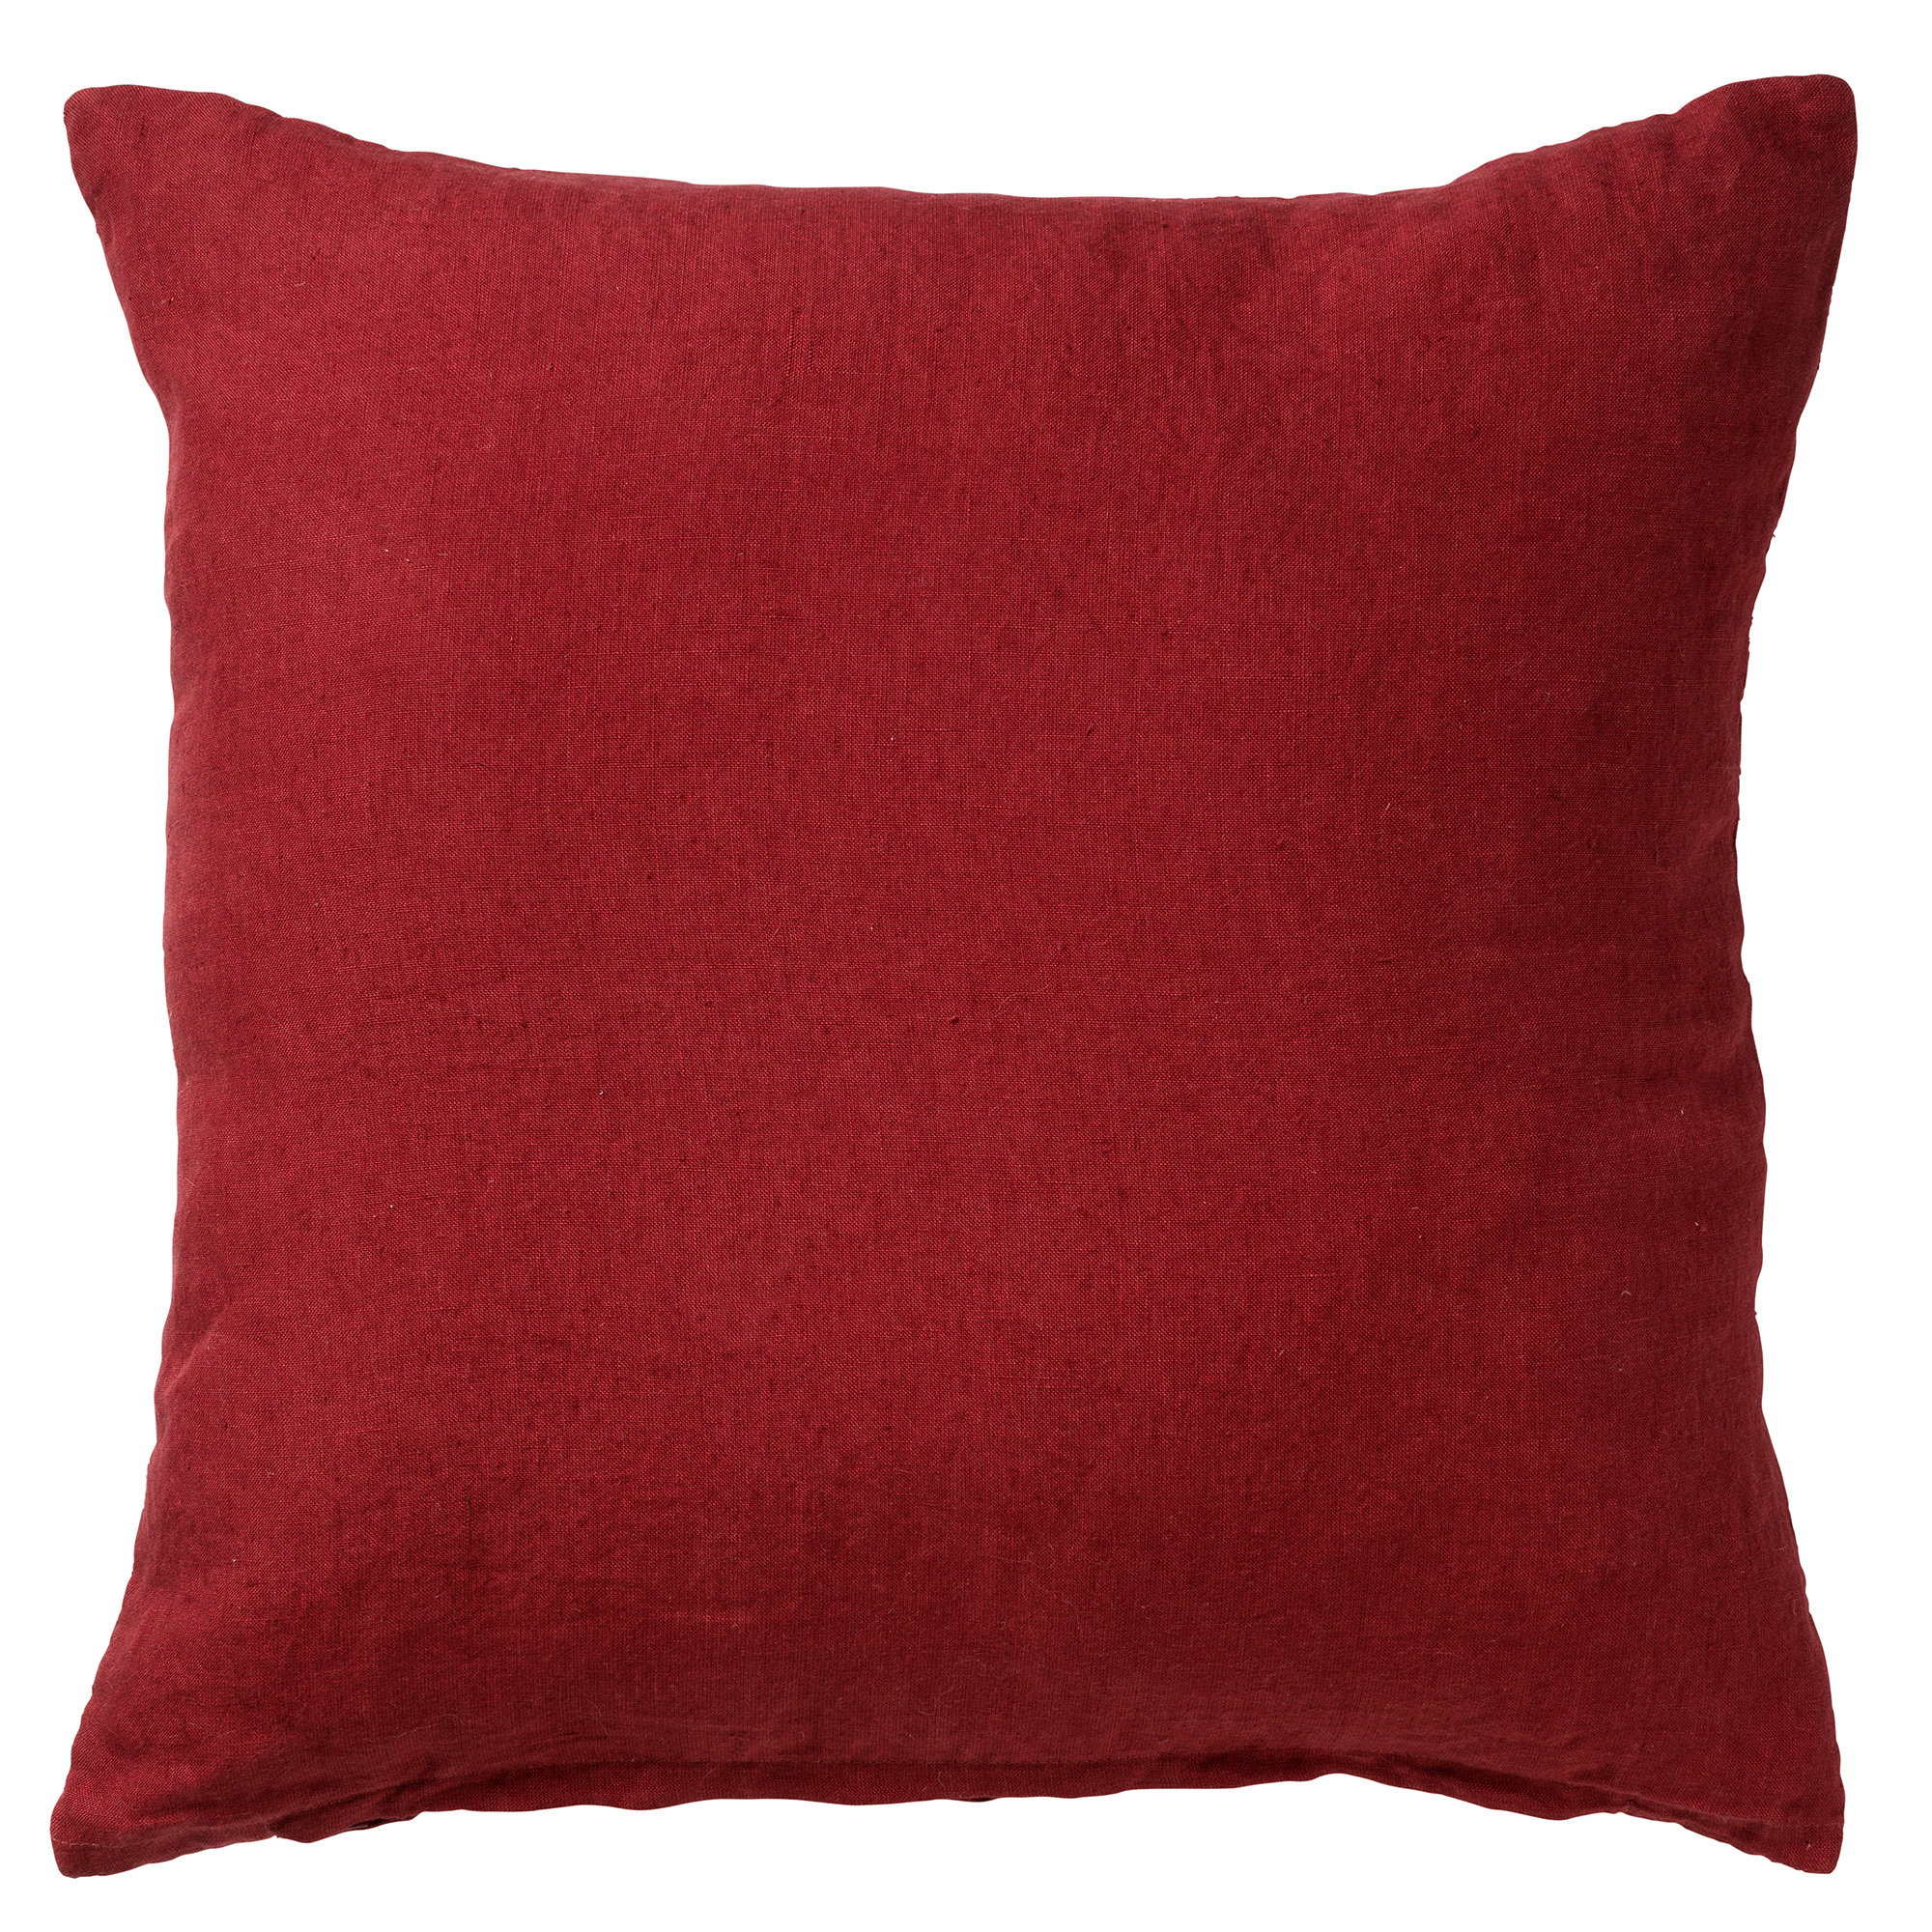 LINN - Sierkussen linnen Merlot 45x45 cm - rood